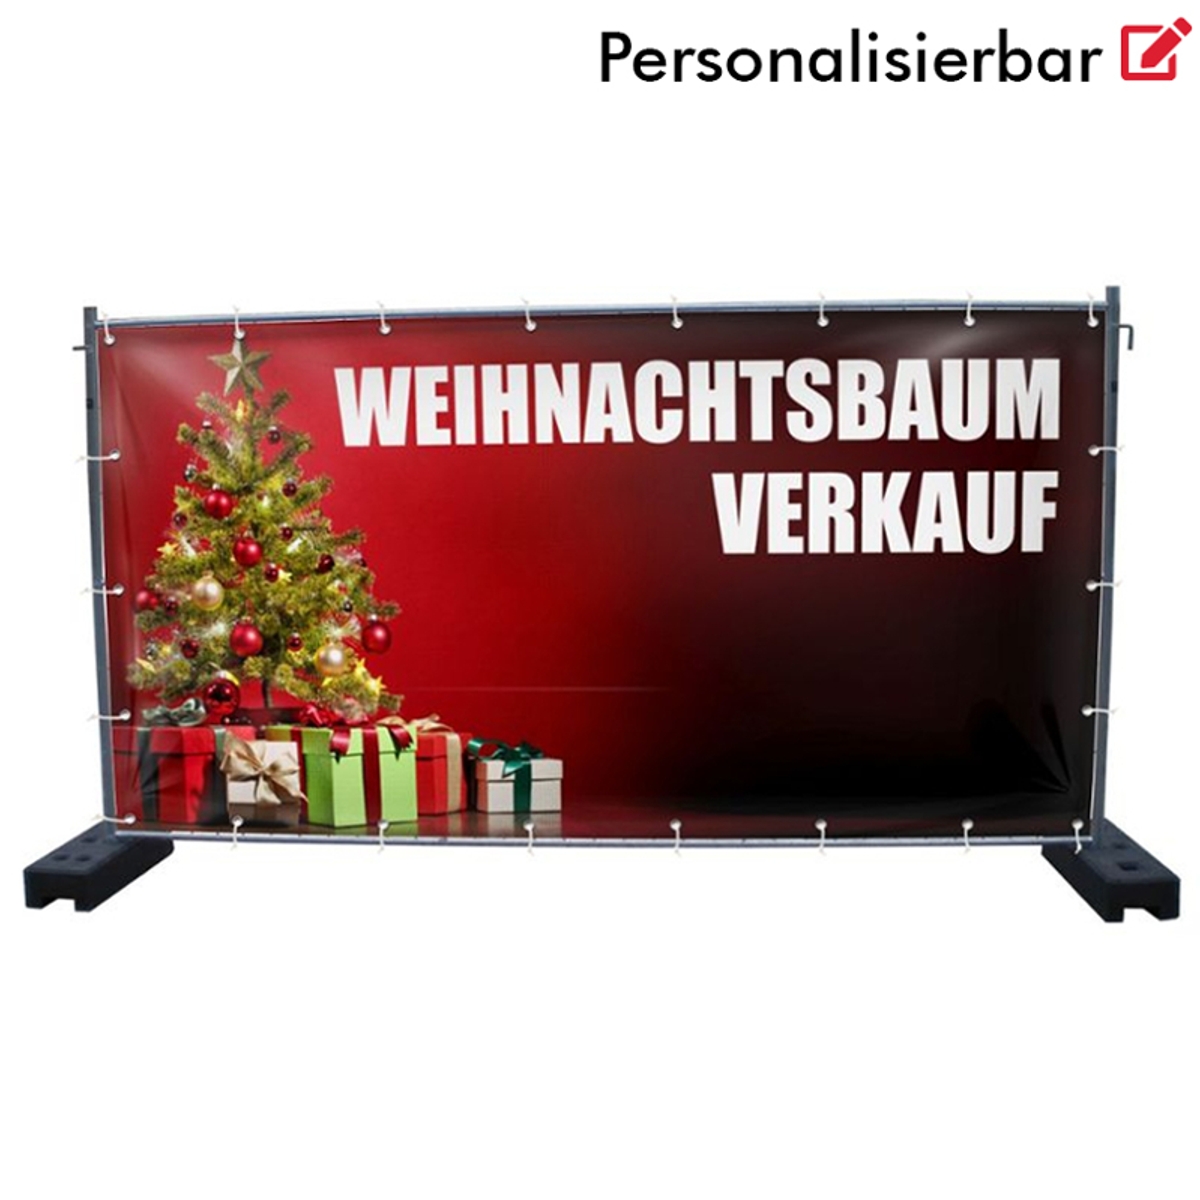 340 x 173 cm | Weihnachtsbaumverkauf Bauzaunbanner (2139)